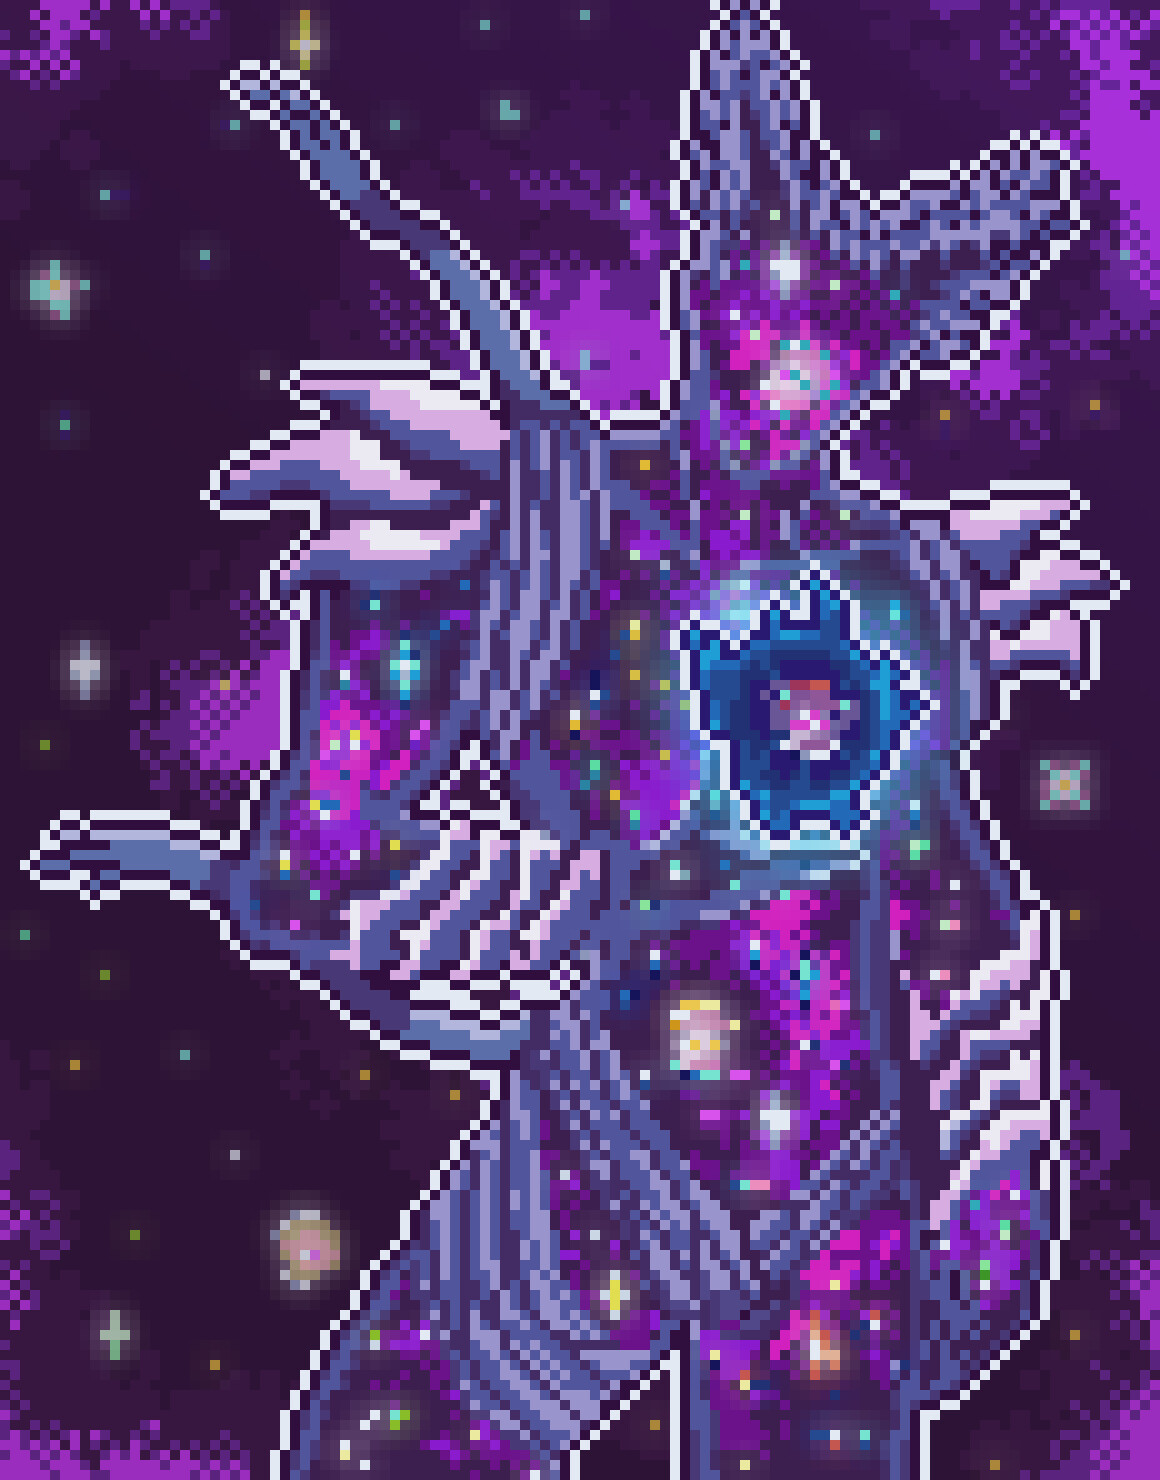 ArtStation - Cosmic Garou Pixel - By Cheeeseguy